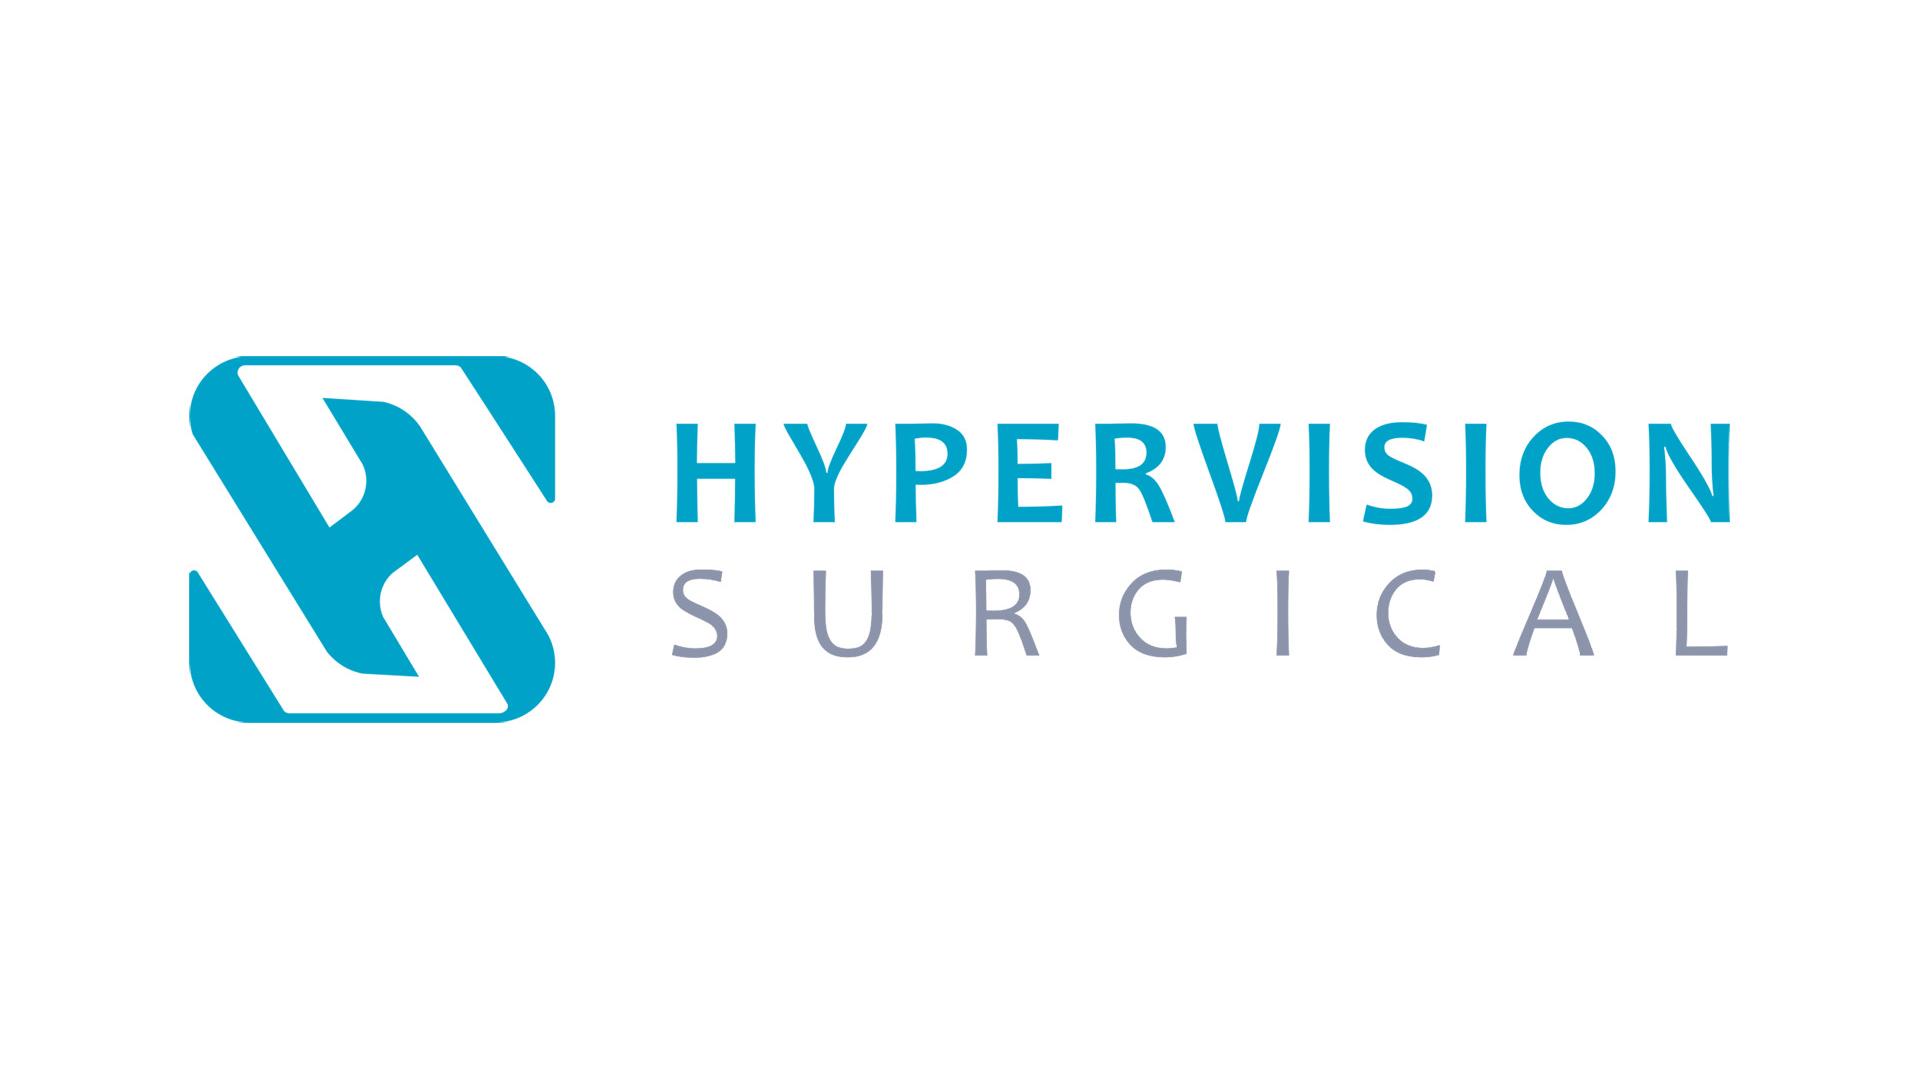 Hypervision Surgical, KI-gestützte hyperspektrale Bildgebung